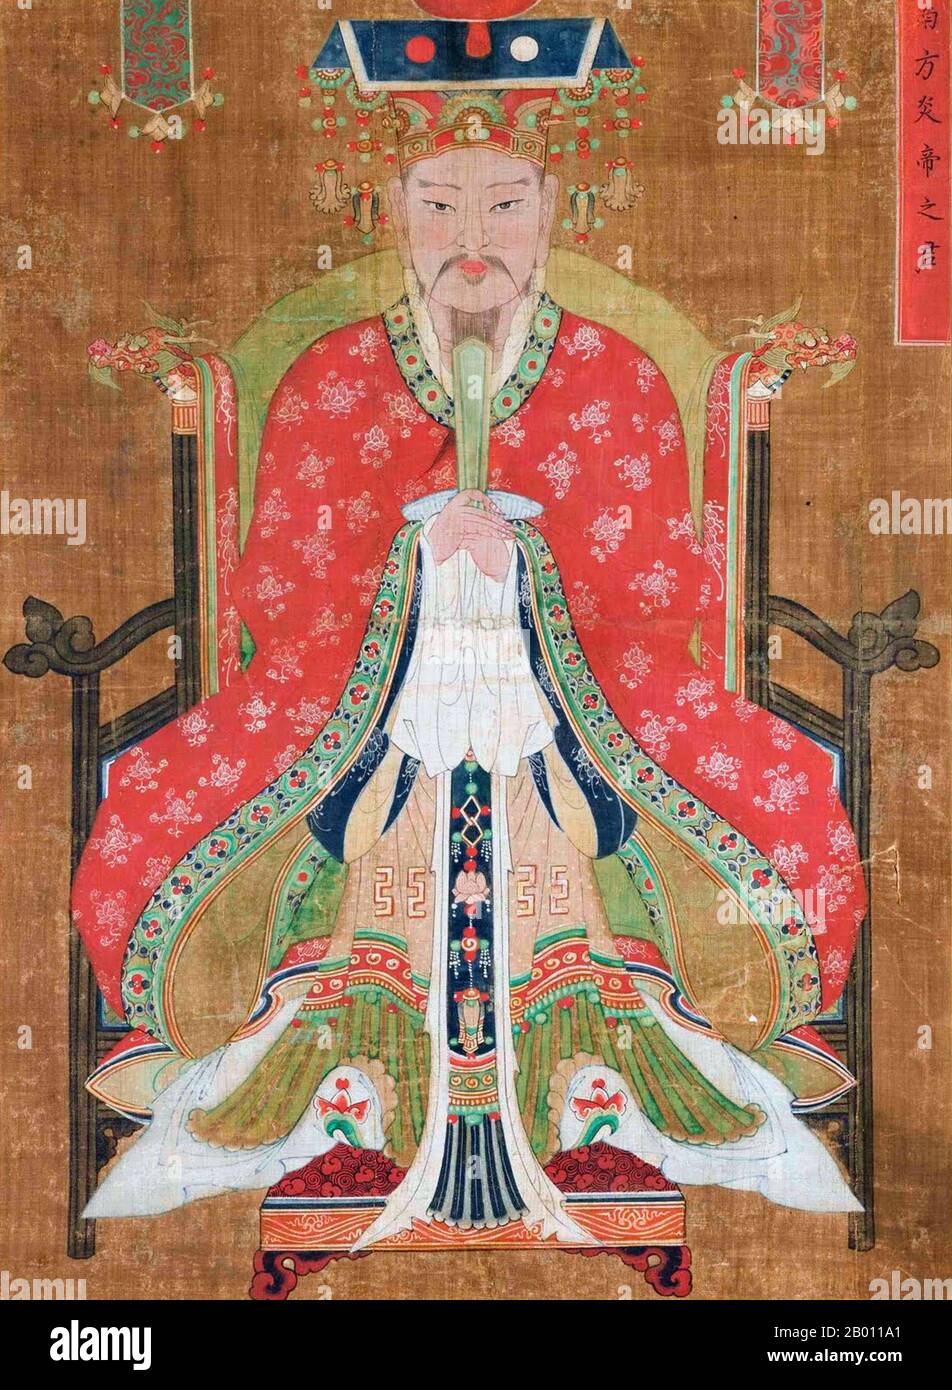 Cina/Corea: "Nambang Yeomje (Nanfang Yendi), Signore del quadrante meridionale". Inchiostro e colore sulla pittura di canapa, dinastia Joseon, 18 ° secolo. Nambang Yeomje (cinese: Nanfang Yendi) è stato il nome coreano del leggendario imperatore Shen Nong, conosciuto anche come l'imperatore Yan (imperatore di fiamma), che si dice abbia scoperto il tè nel 2737 a.C. ed è venerato come il padre della medicina tradizionale cinese. È adorato come un'entità di religione Daoista e popolare in Cina e Vietnam. Foto Stock